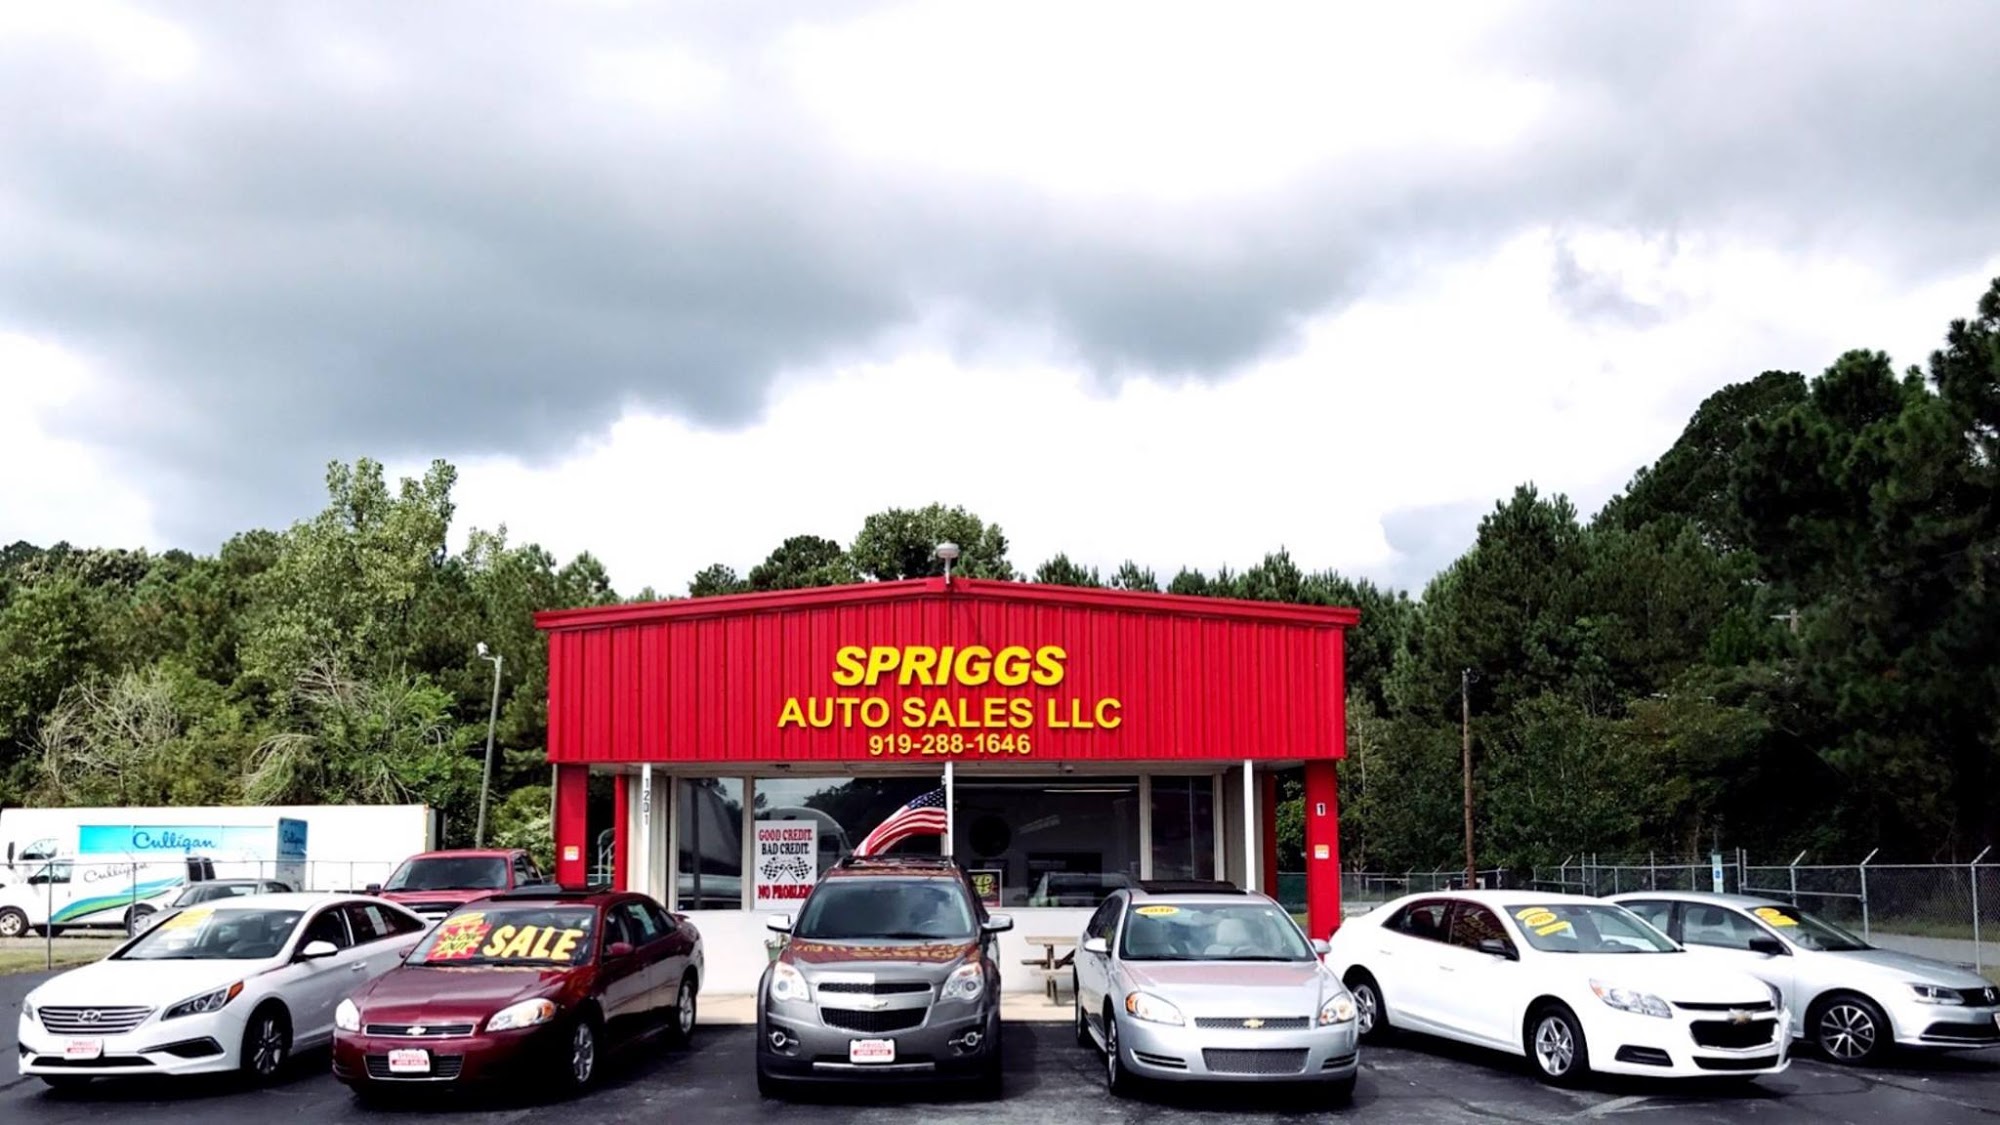 Spriggs Auto Sales